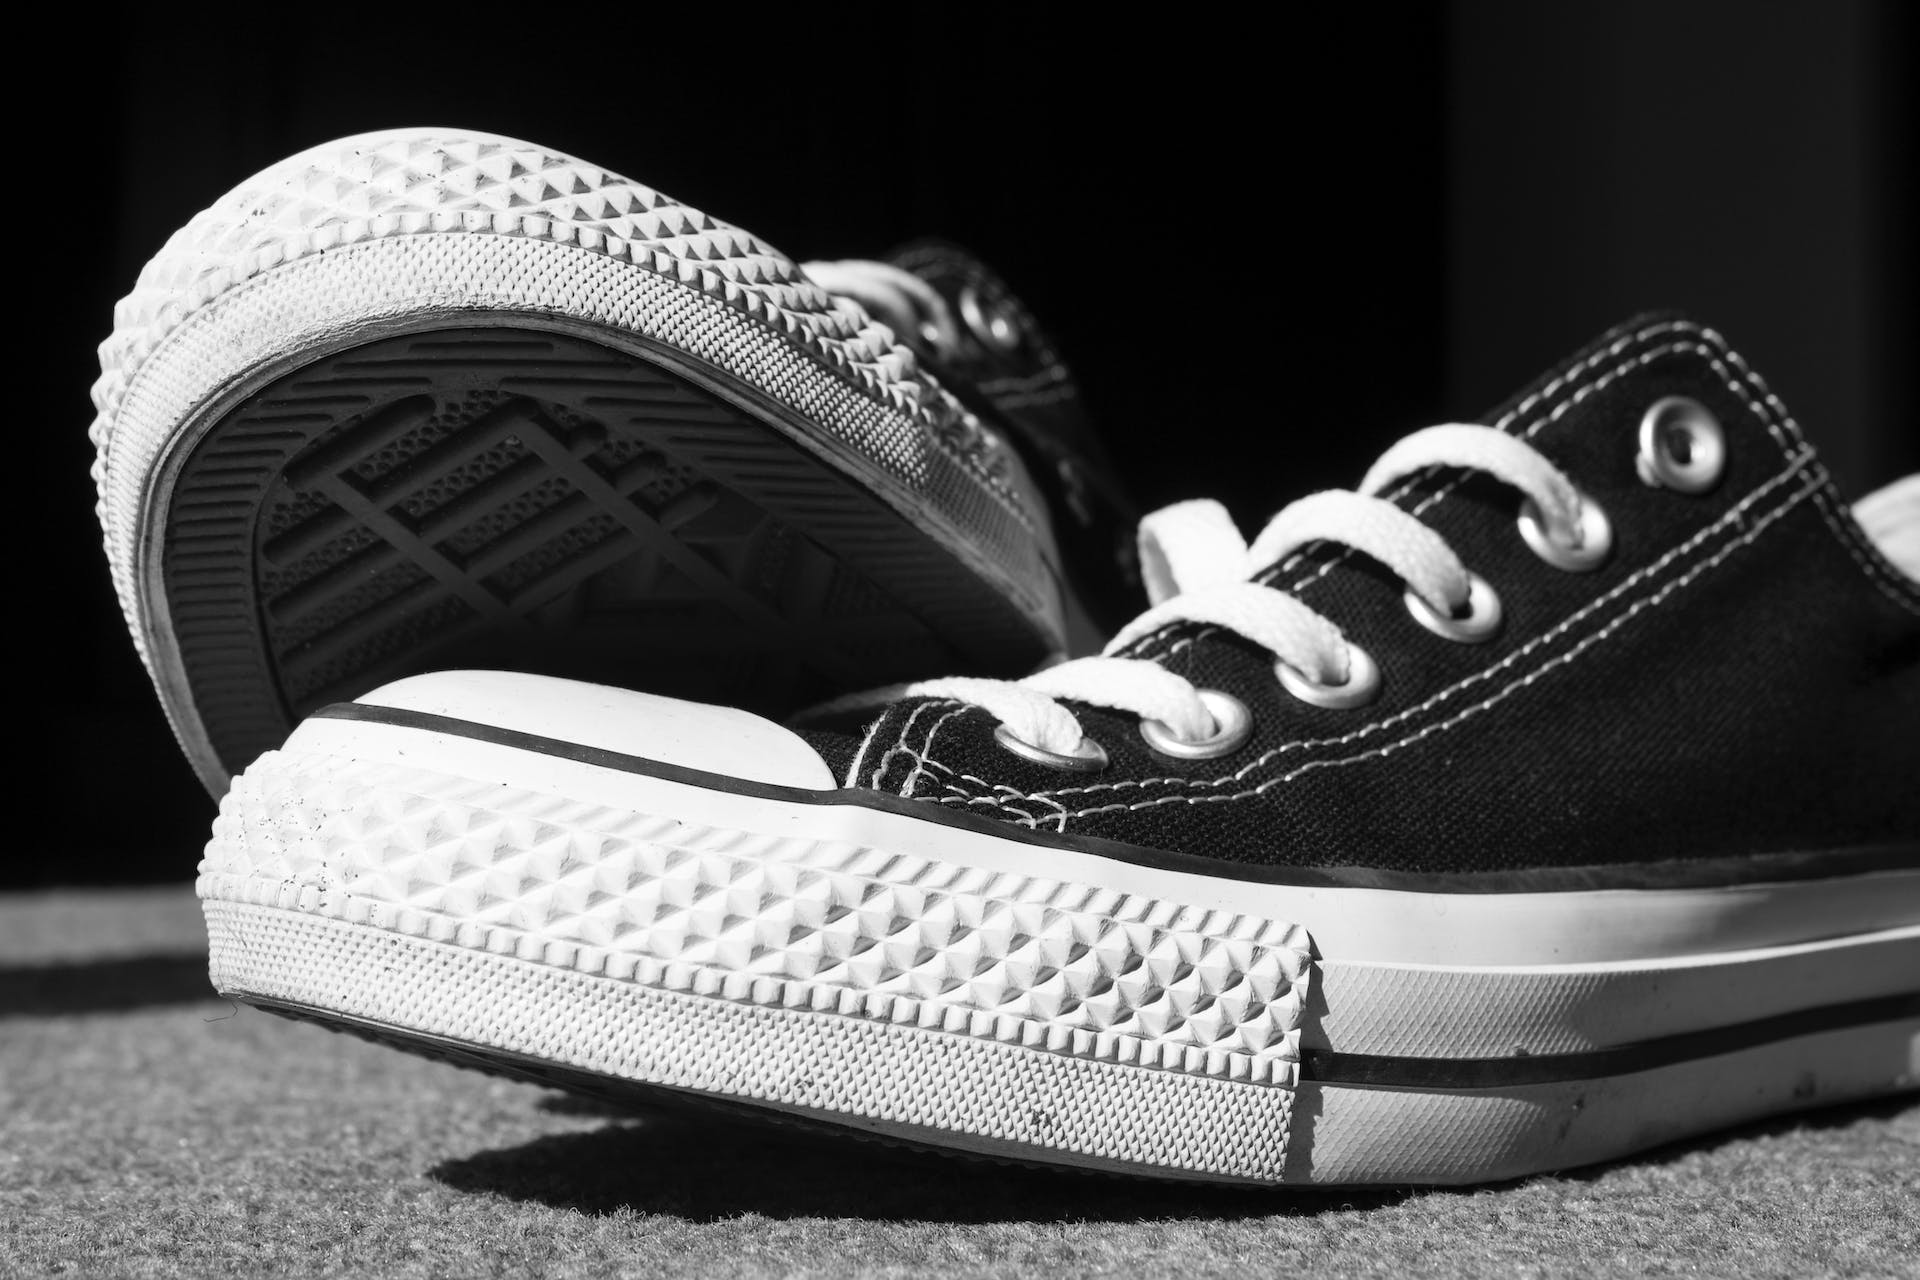 A pair of sneakers | Source: Pexels